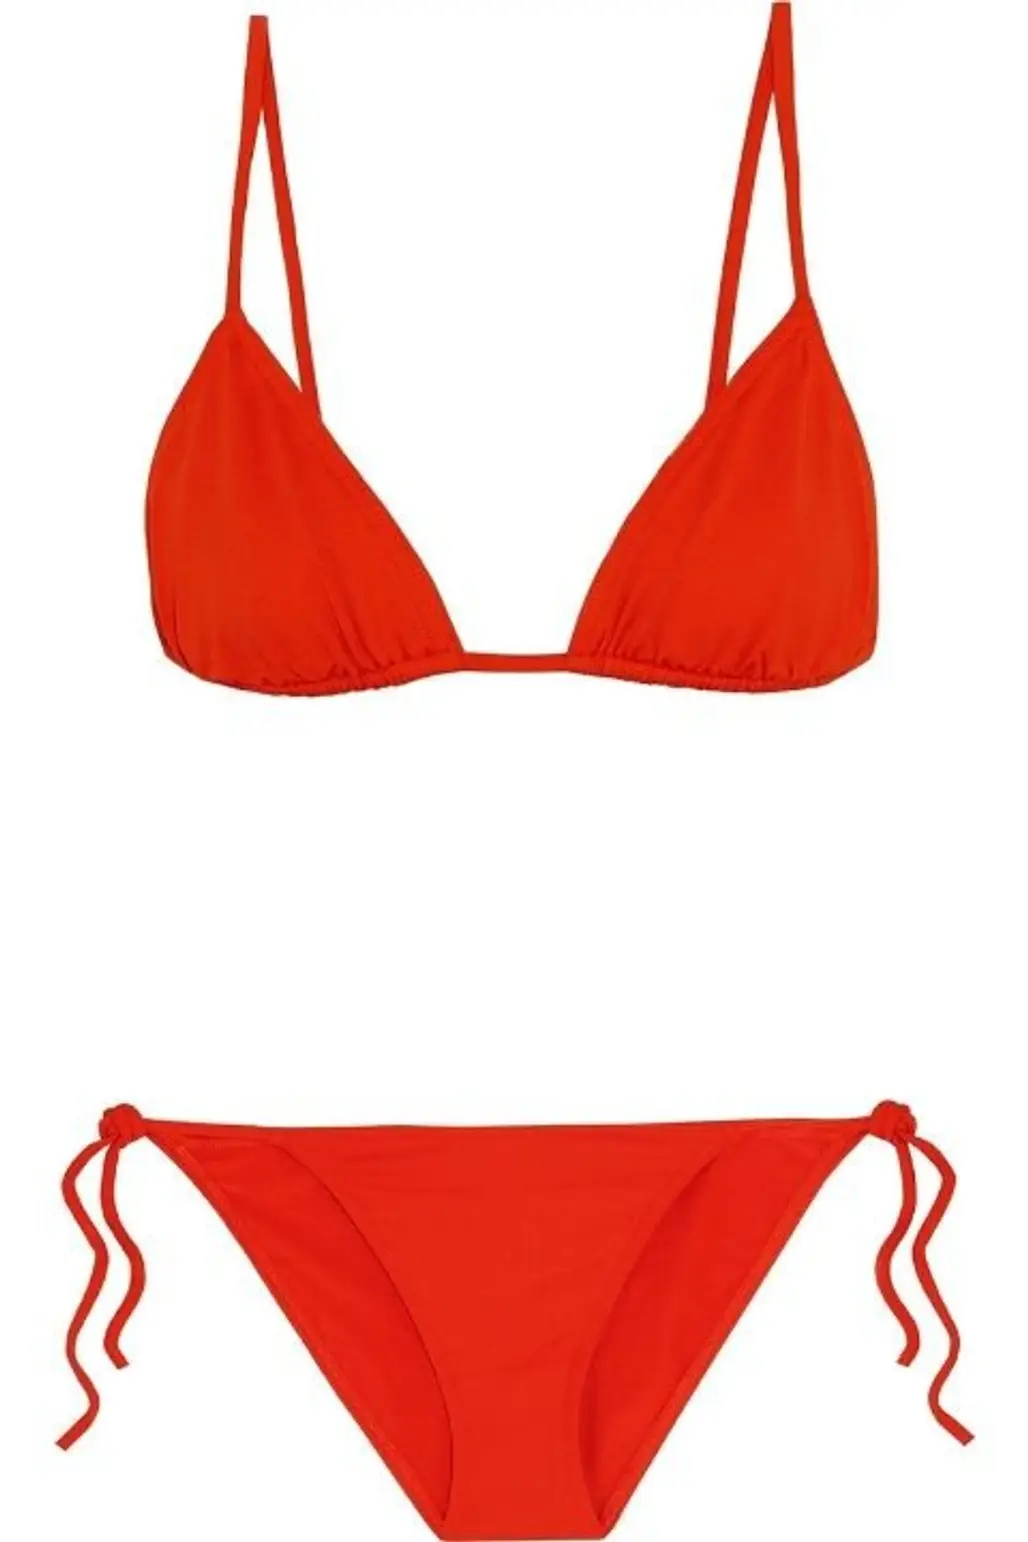 swimwear, clothing, red, undergarment, orange,